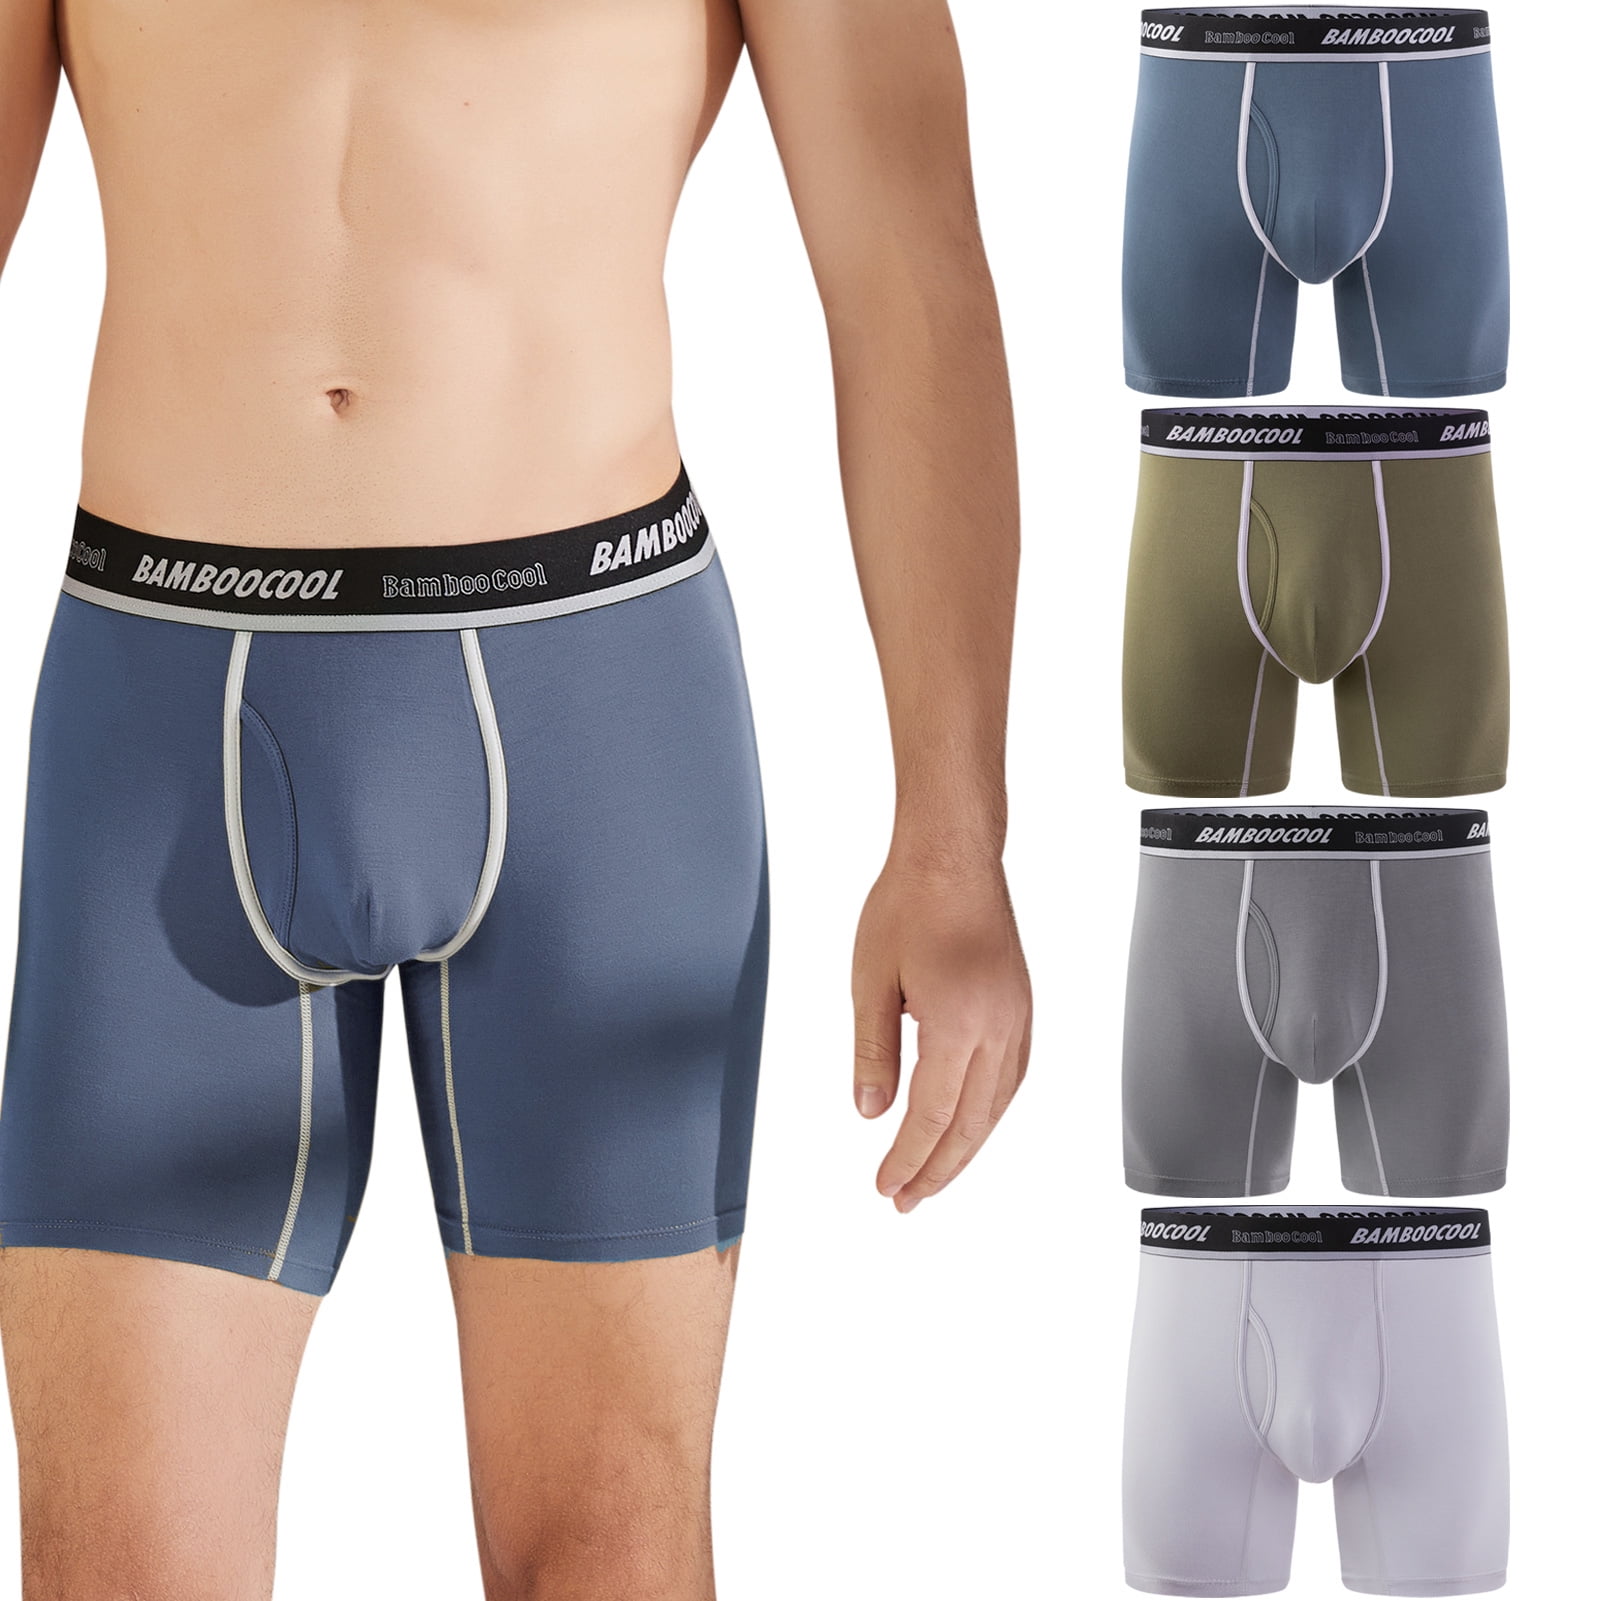 Men's Underwear Boxer Briefs,Bamboo Viscose Breathable Underwear for Men,4  Pack,M-XXL 